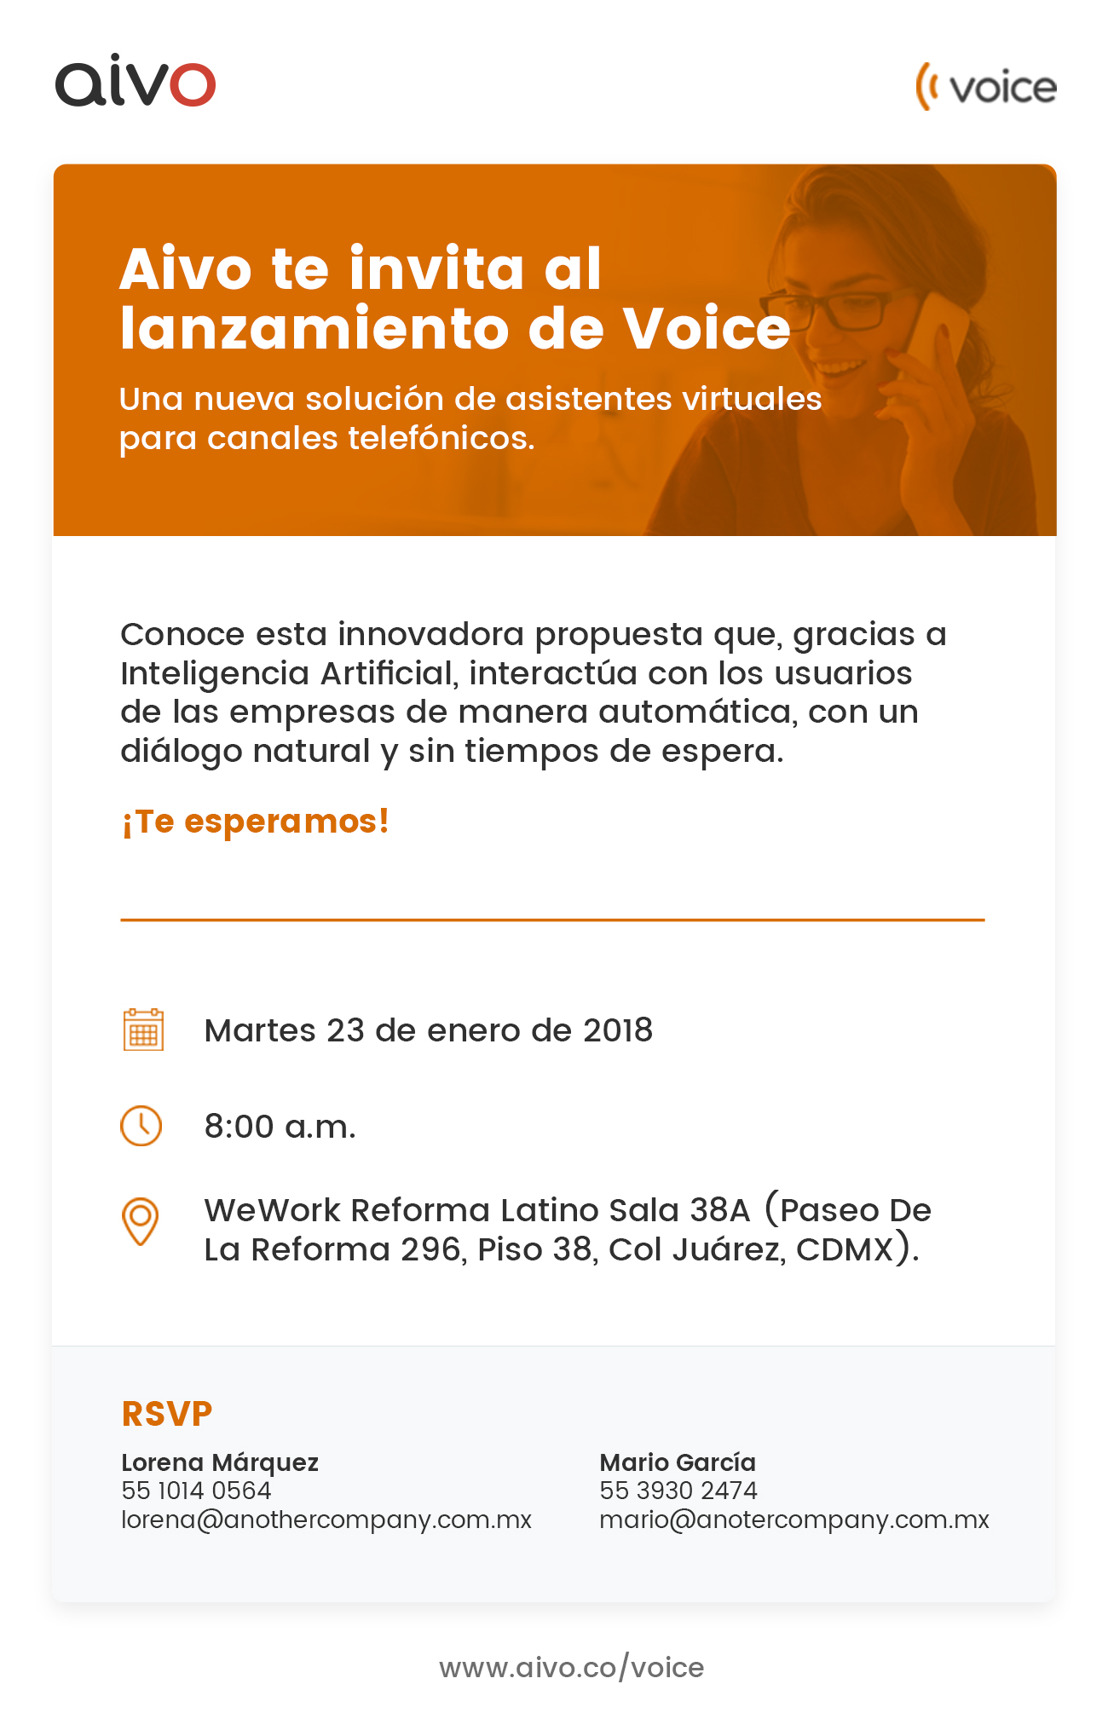 INVITACIÓN: Aivo te invita al lanzamiento de Voice